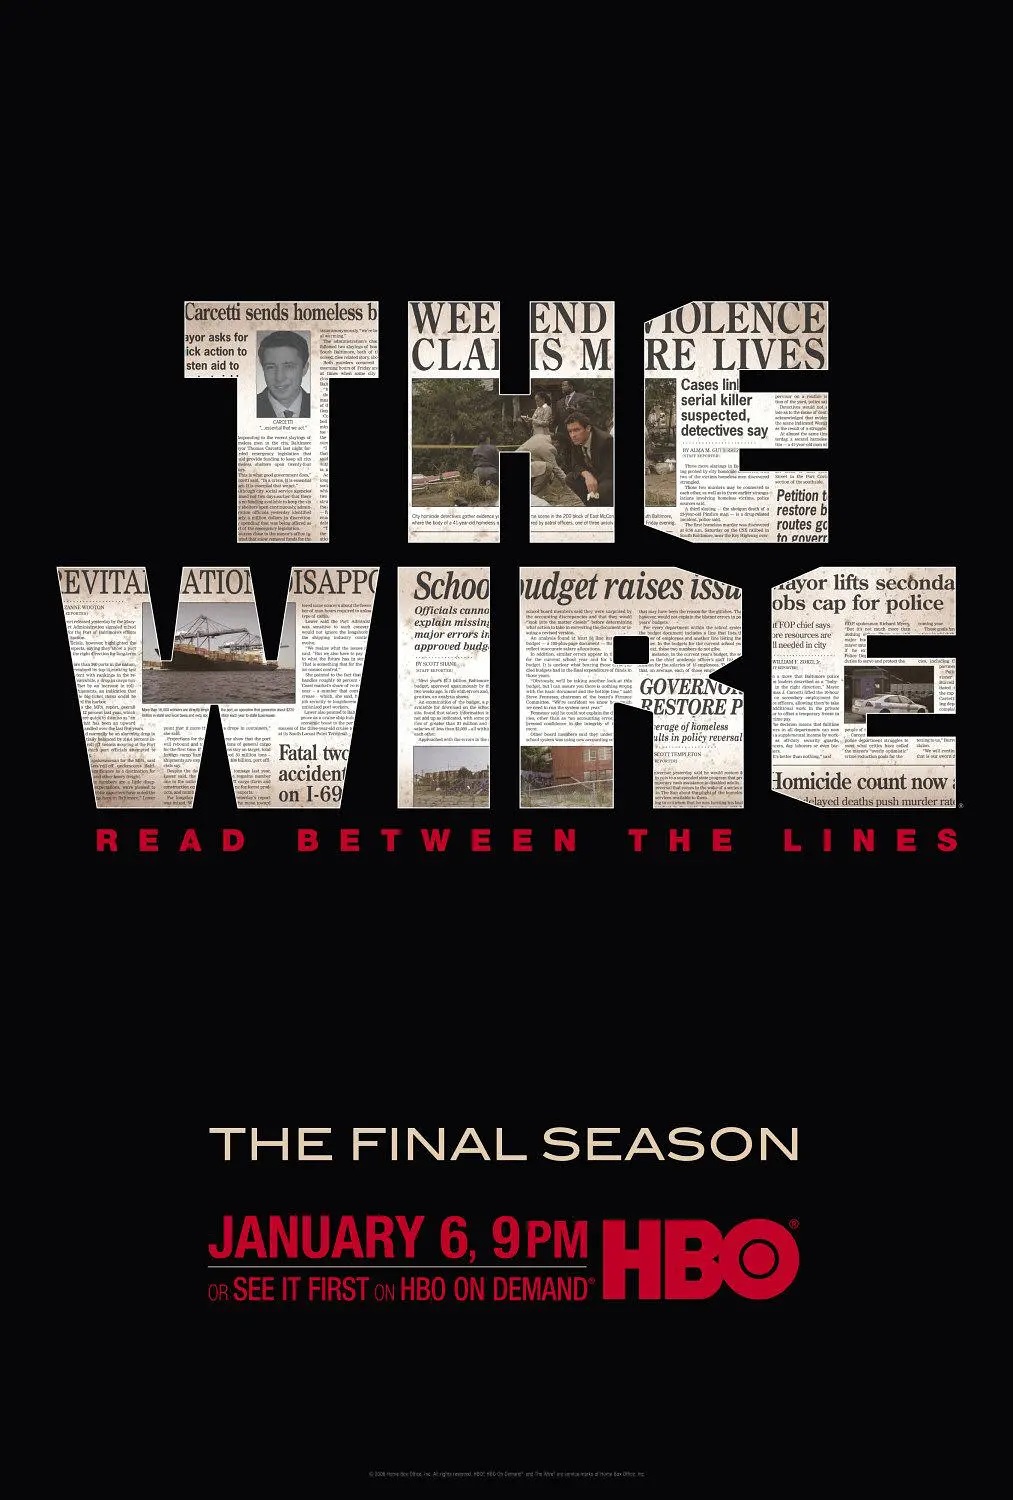 火线 第五季 / HBO无间行者 第五季 / 火线重案组 第五季[全10集/全剧终][原盘DIY简繁双语四字幕] The Wire S05 1080p EUR AVC DTS-HD MA 5.1-ltzww@CHDBits[148.34GB]-2.jpg